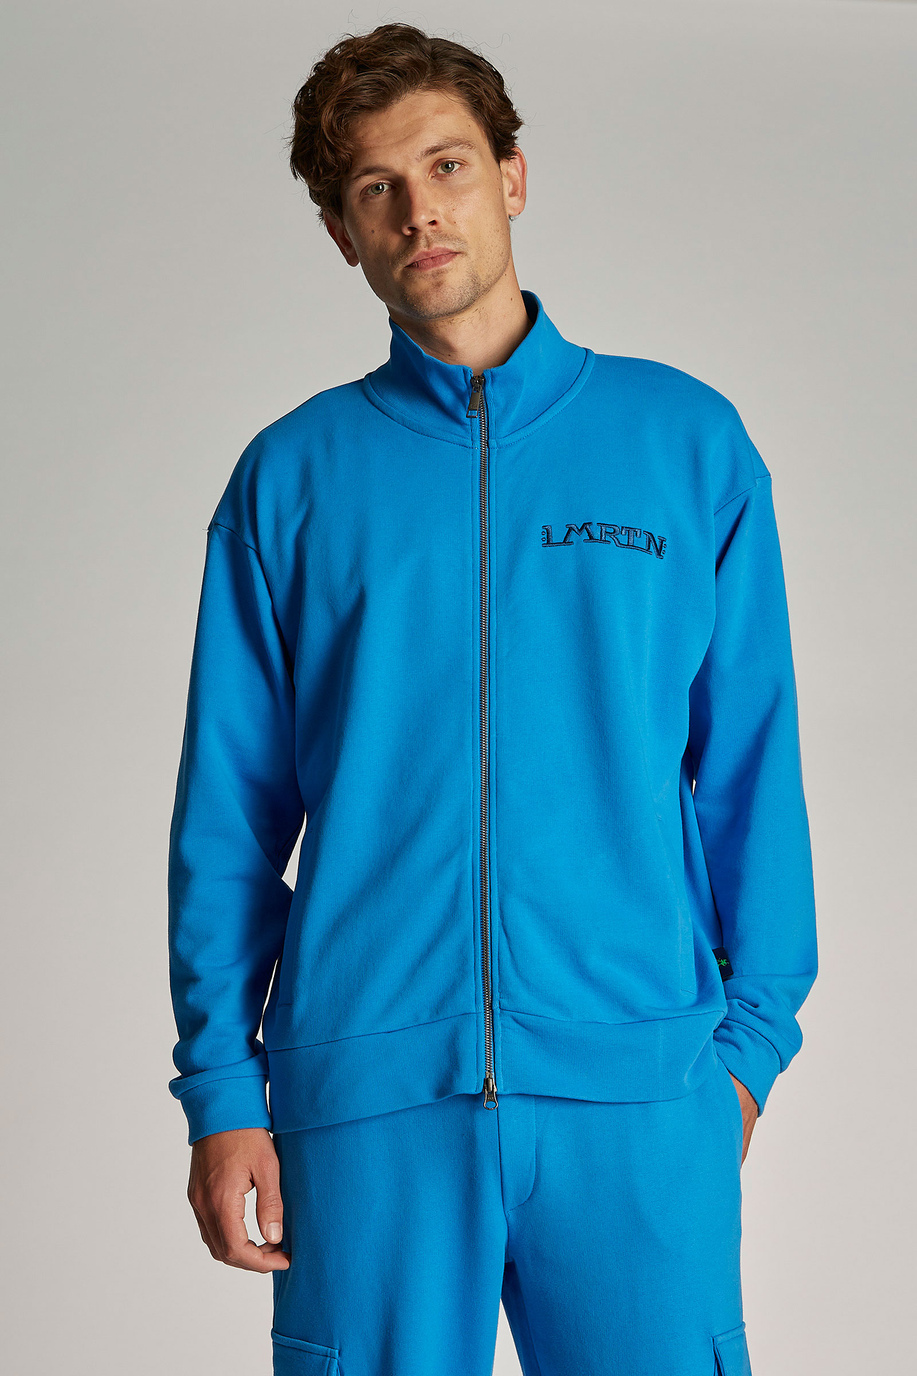 Men's oversized zip-up sweatshirt in 100% cotton fabric - LMRTN | La Martina - Official Online Shop